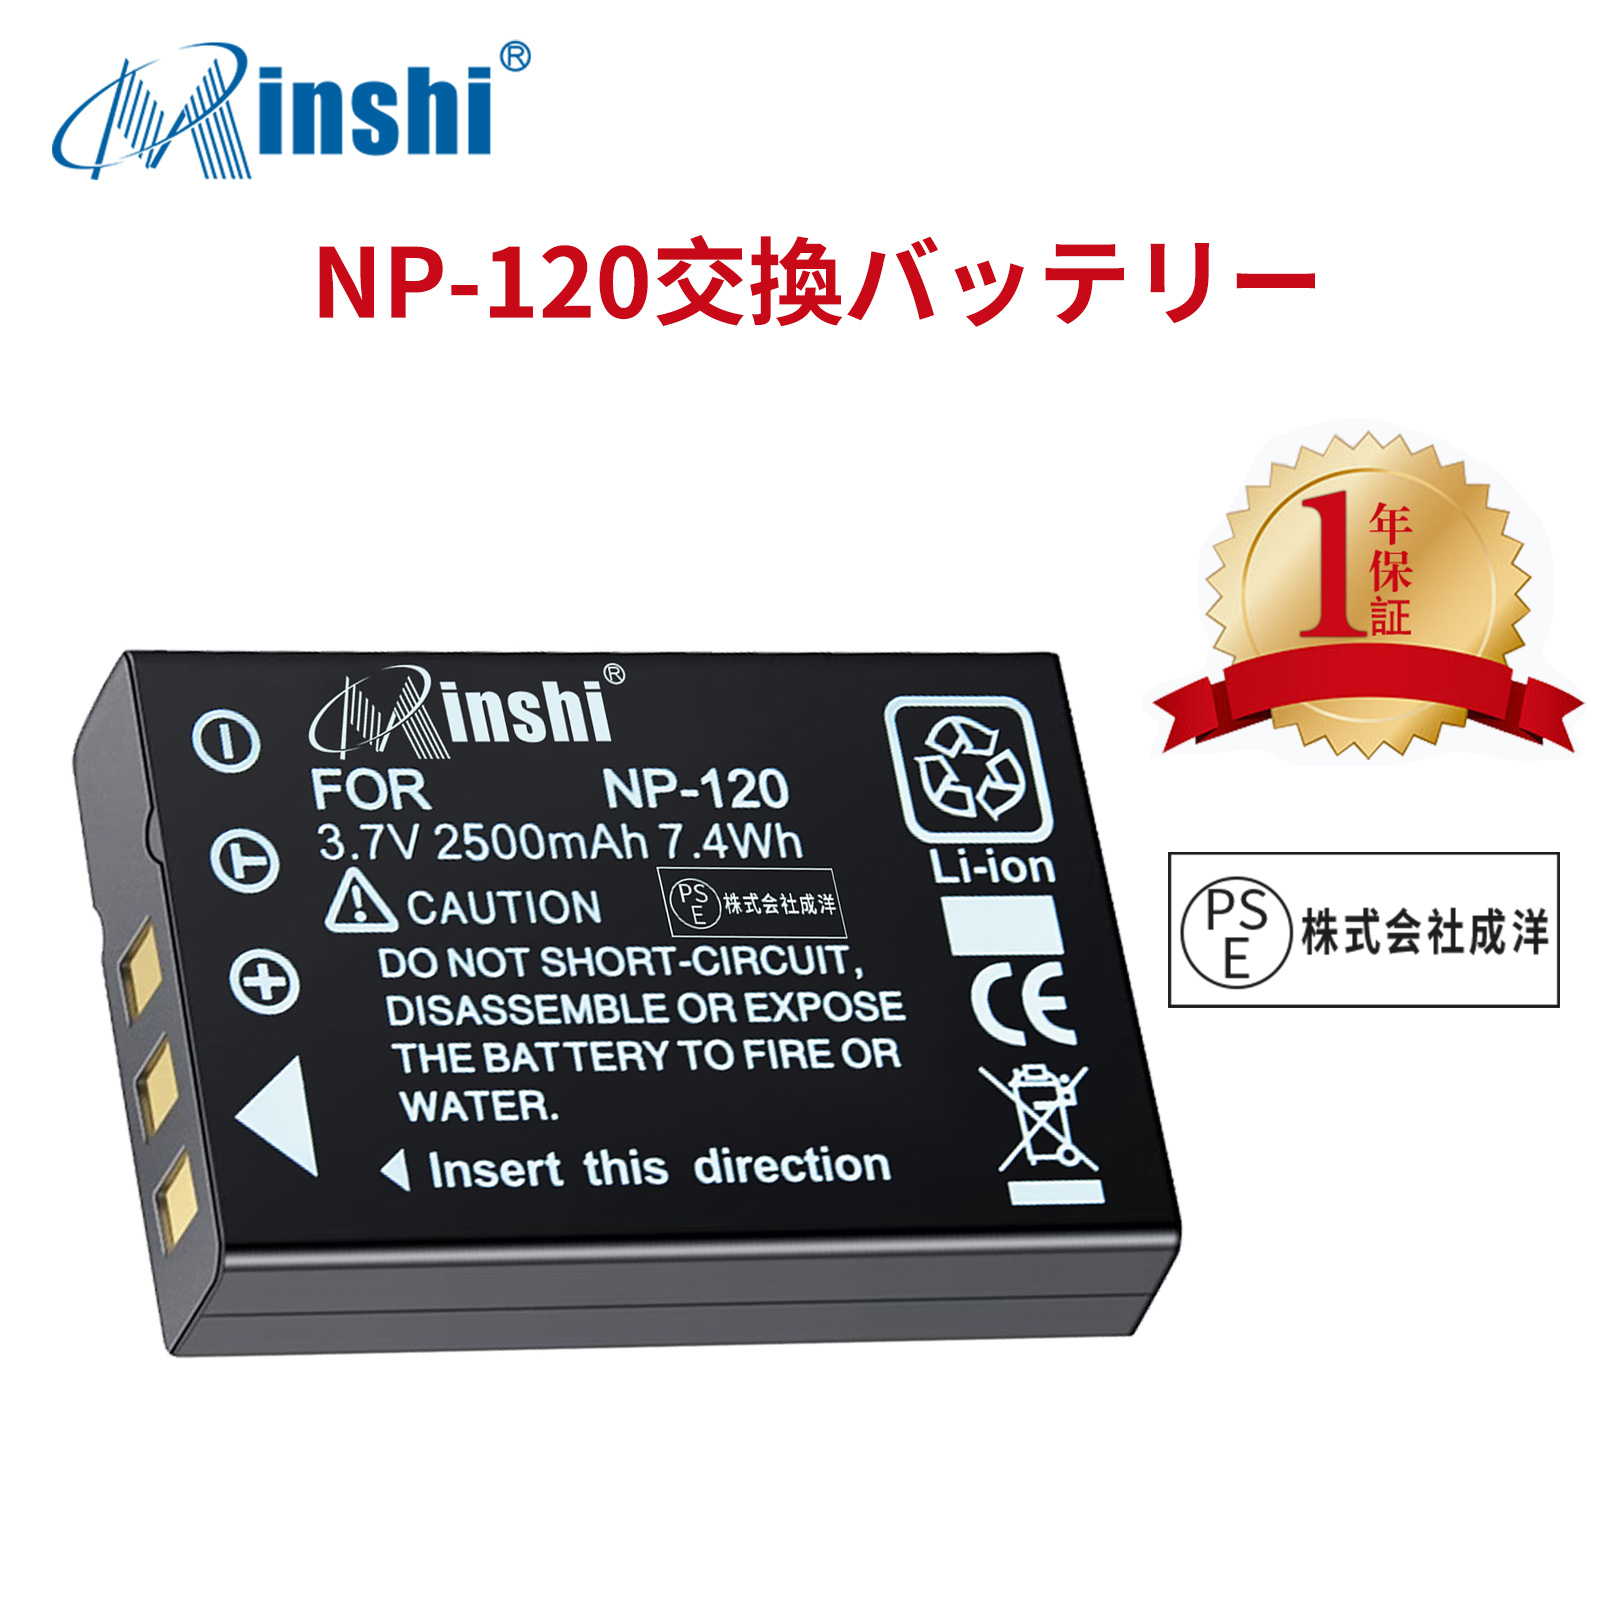 【1年保証】minshi FUJIFILM Caplio 400G wide NP-120 【2500mAh 3.7V】 高品質NP-120交換用バッテリー